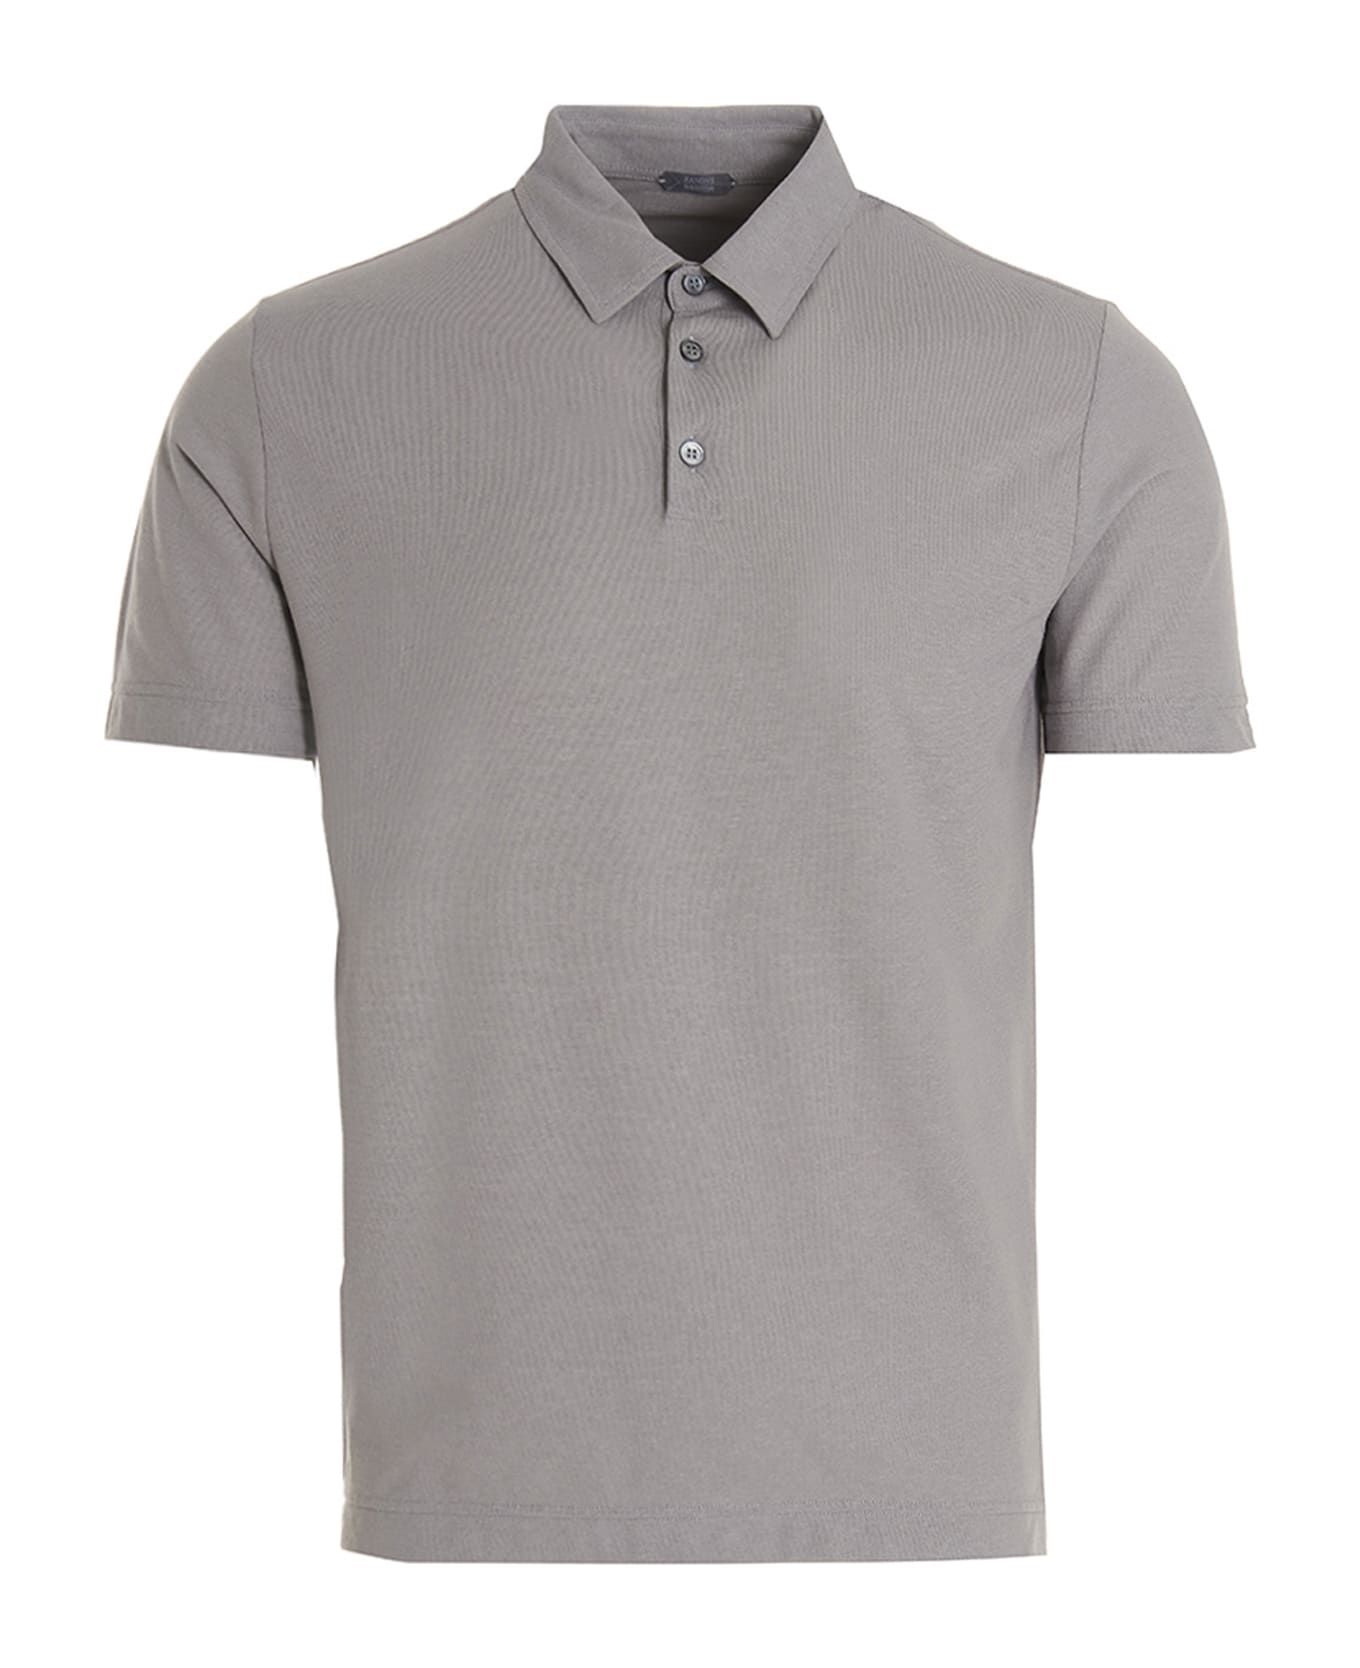 Zanone Ice Cotton Polo Shirt - Grigio chiaro